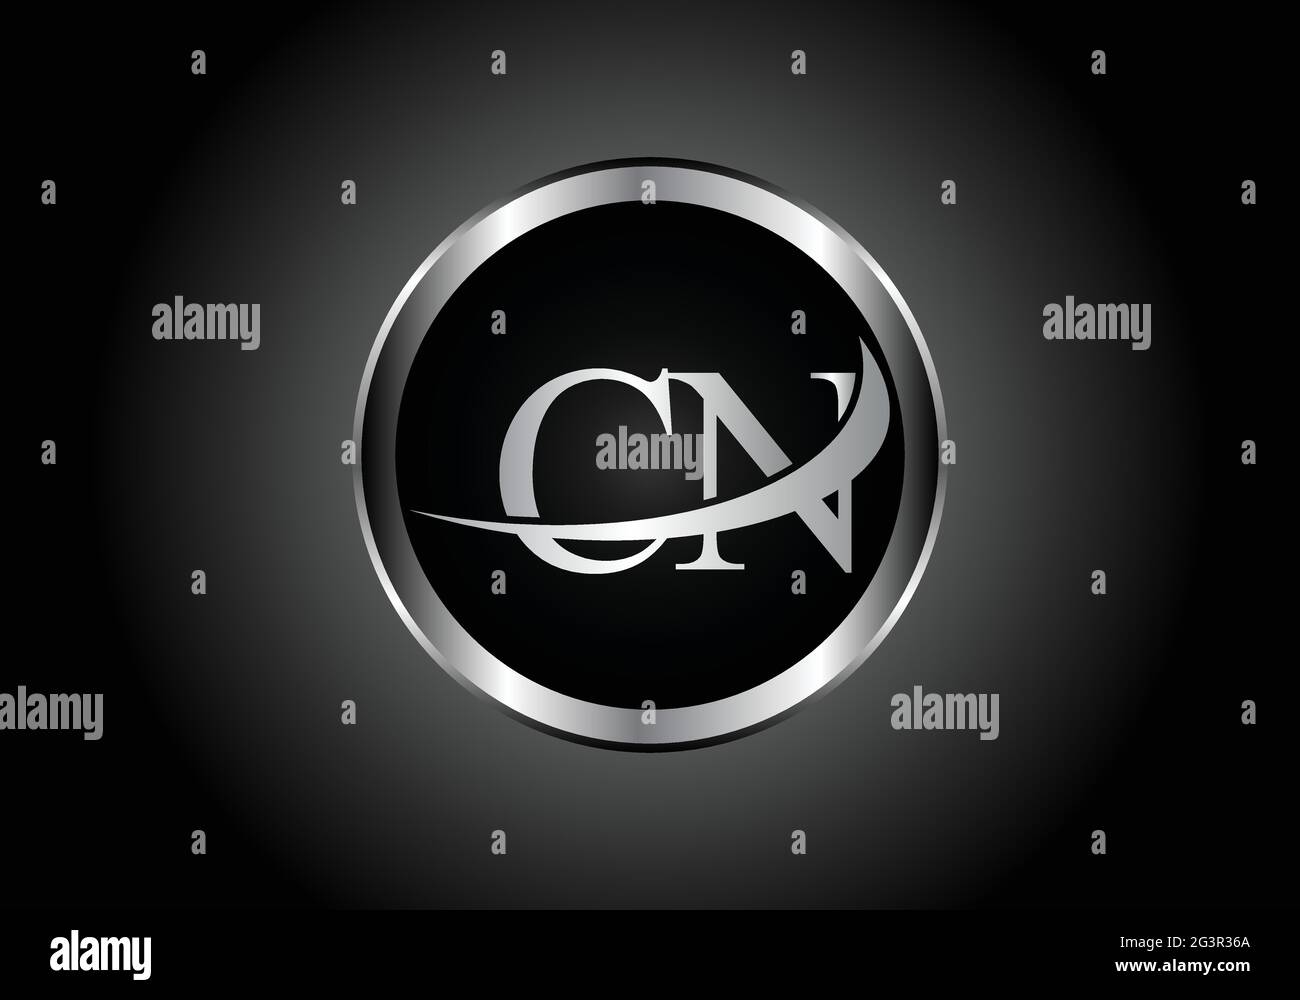 Silberner Buchstabe CN Metallkombination Alphabet Logo Icon Design mit grauer Farbe auf Schwarz-Weiß-Gradienten-Design für ein Unternehmen oder Unternehmen Stock Vektor